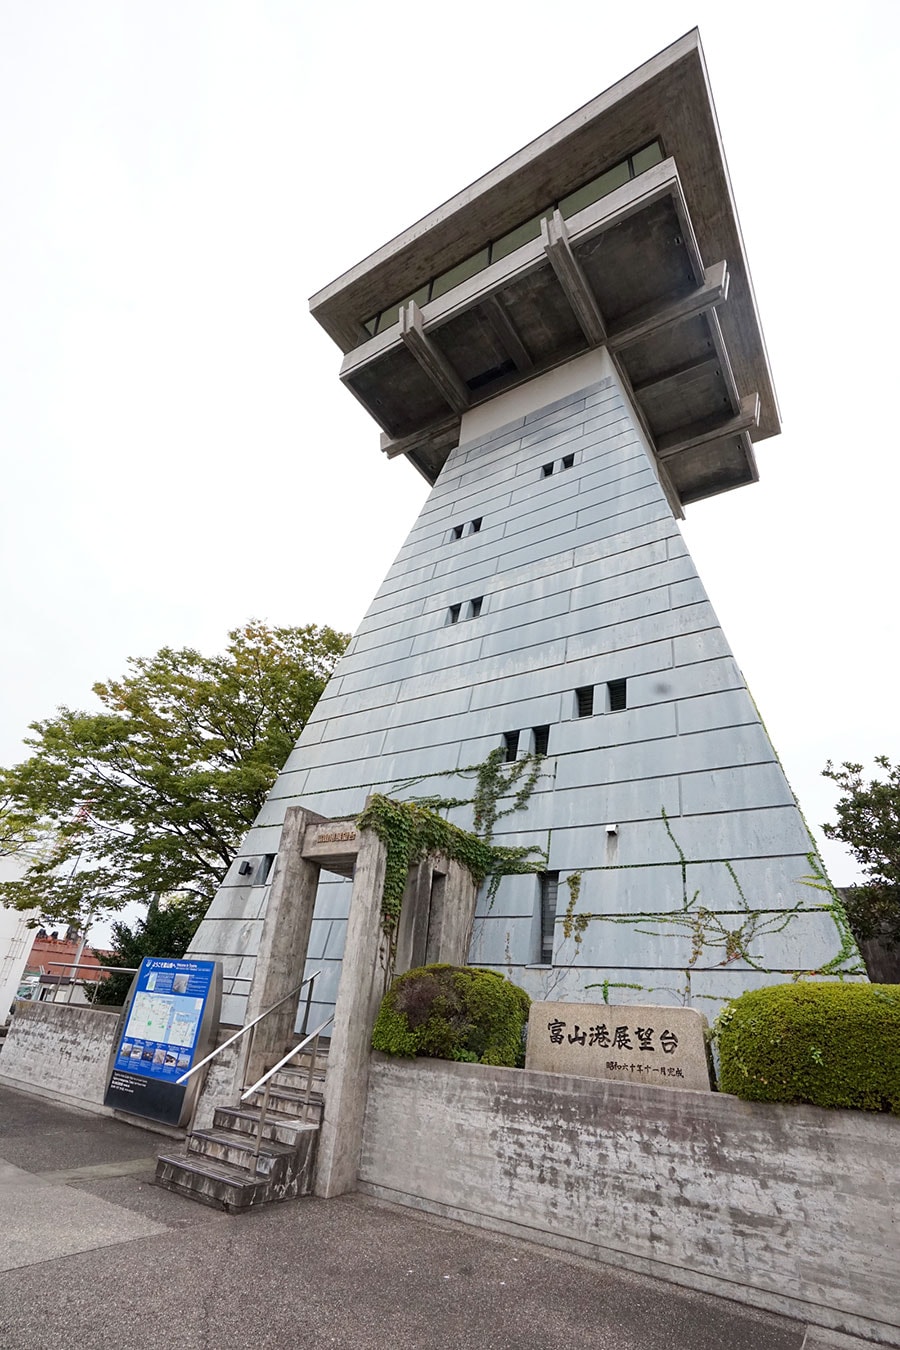 「富山港展望台」は、かつては行き交う船の安全を見守る灯台として使われていた。